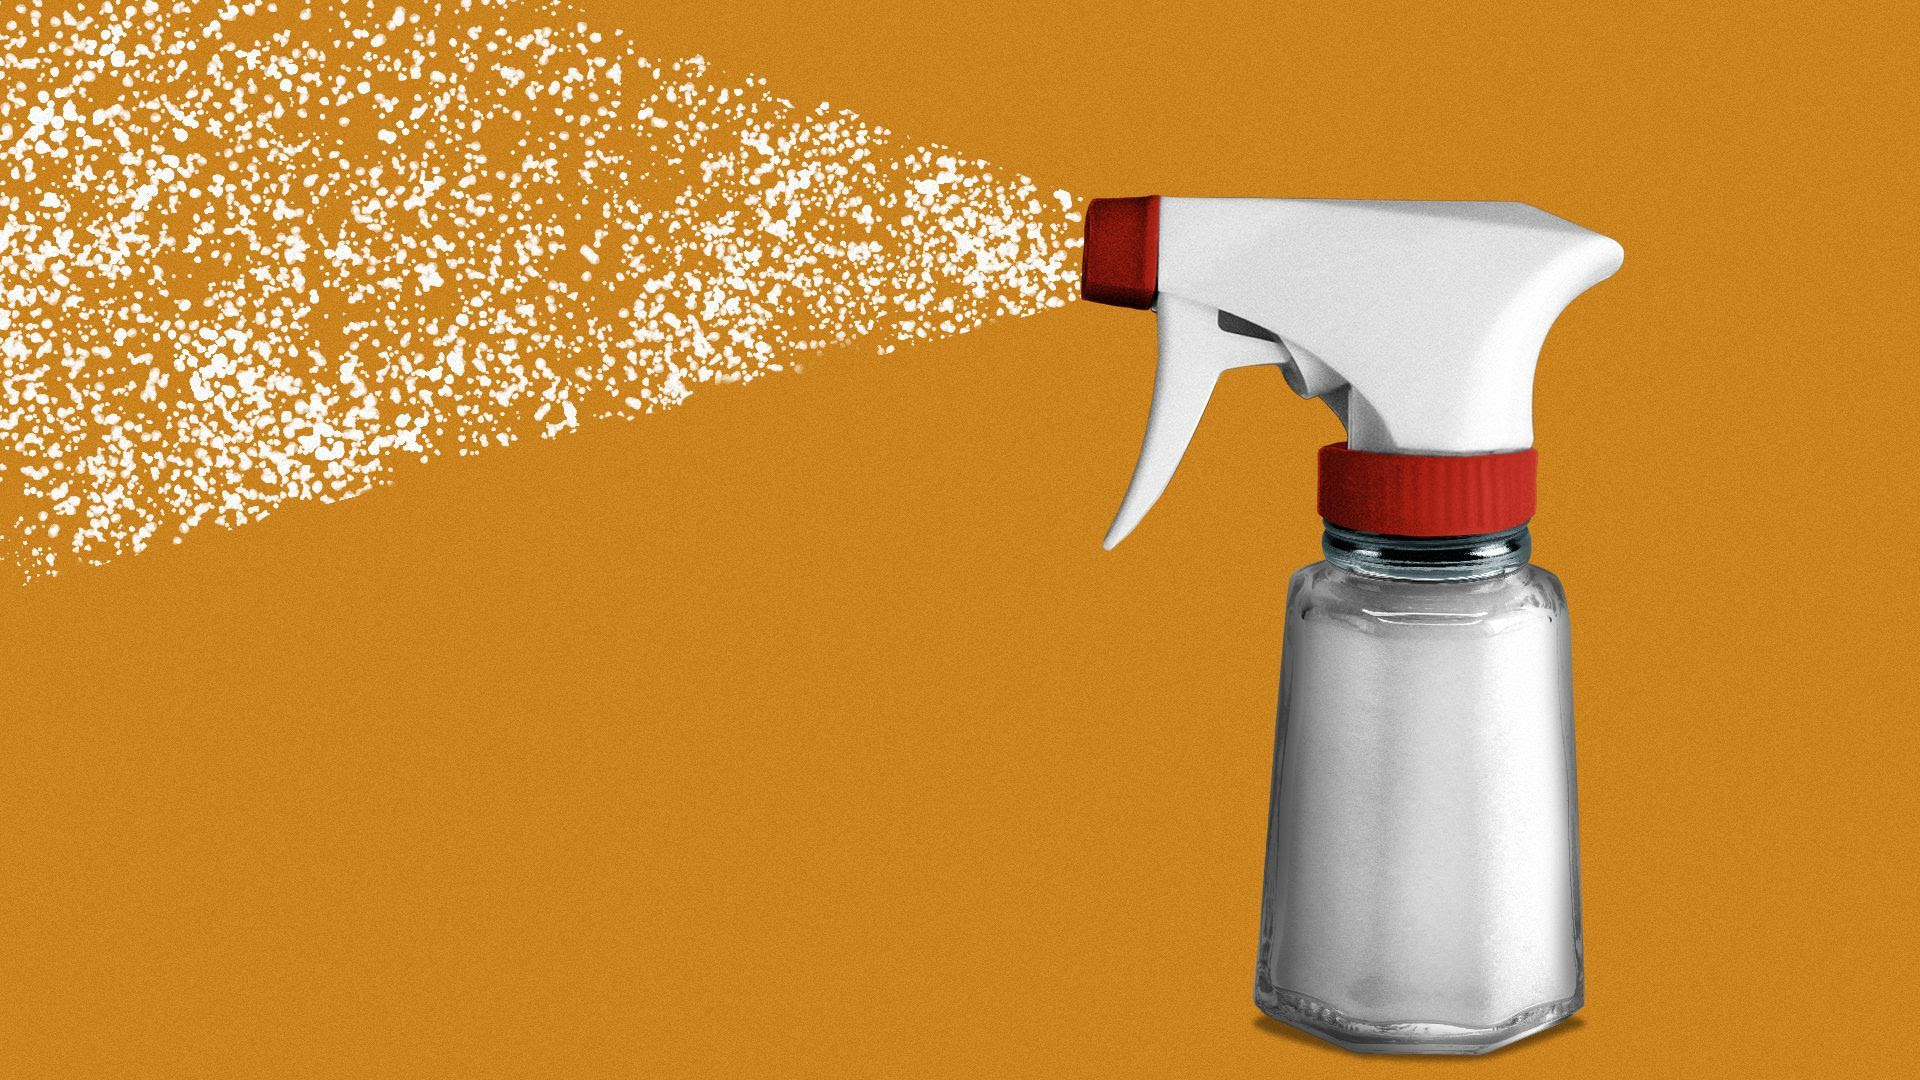 Illustration of a spray head on a salt shaker spraying salt.